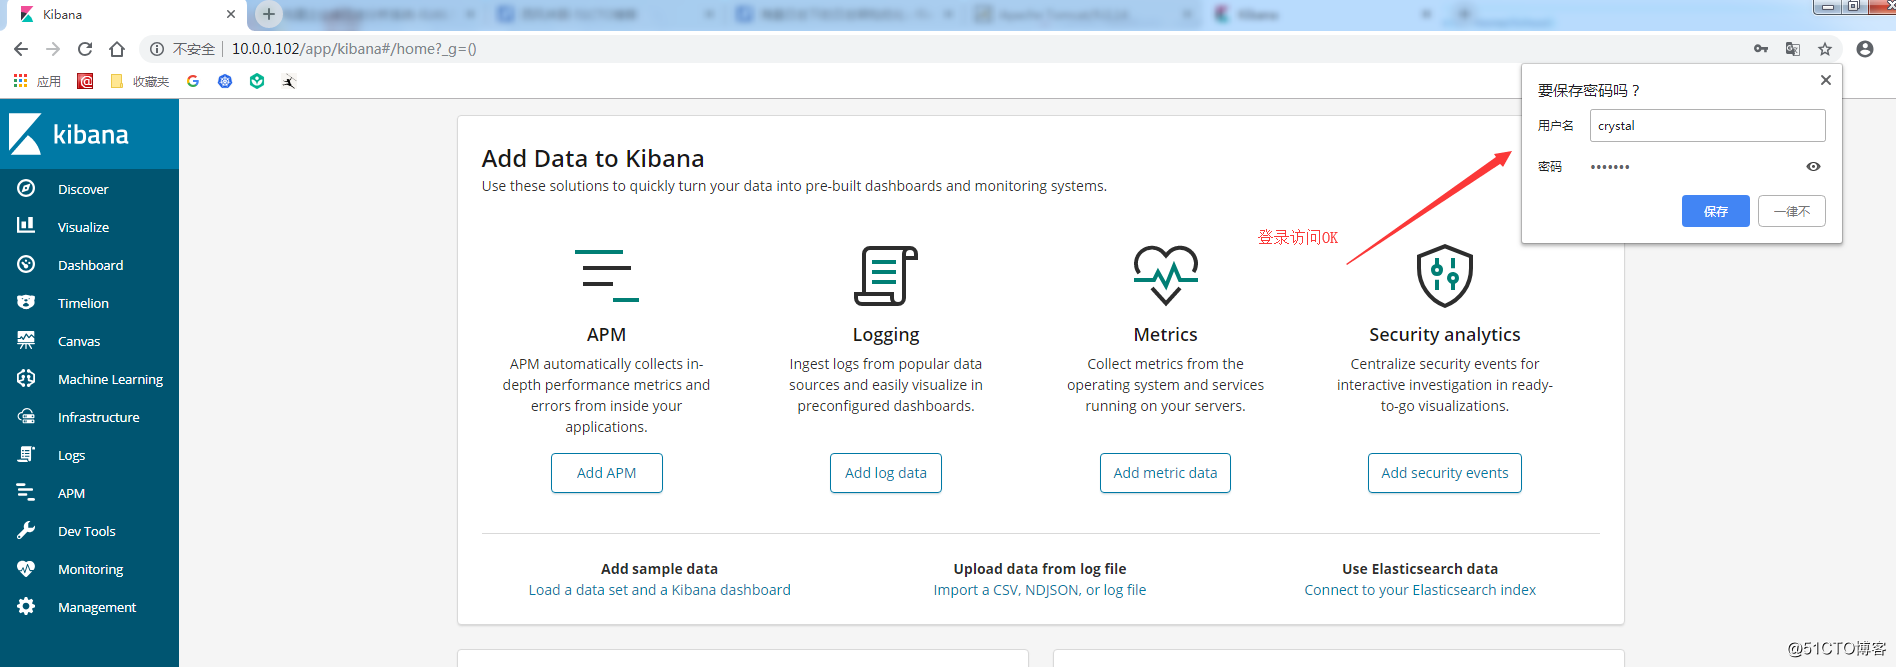 kibana安全——设置访问账号密码